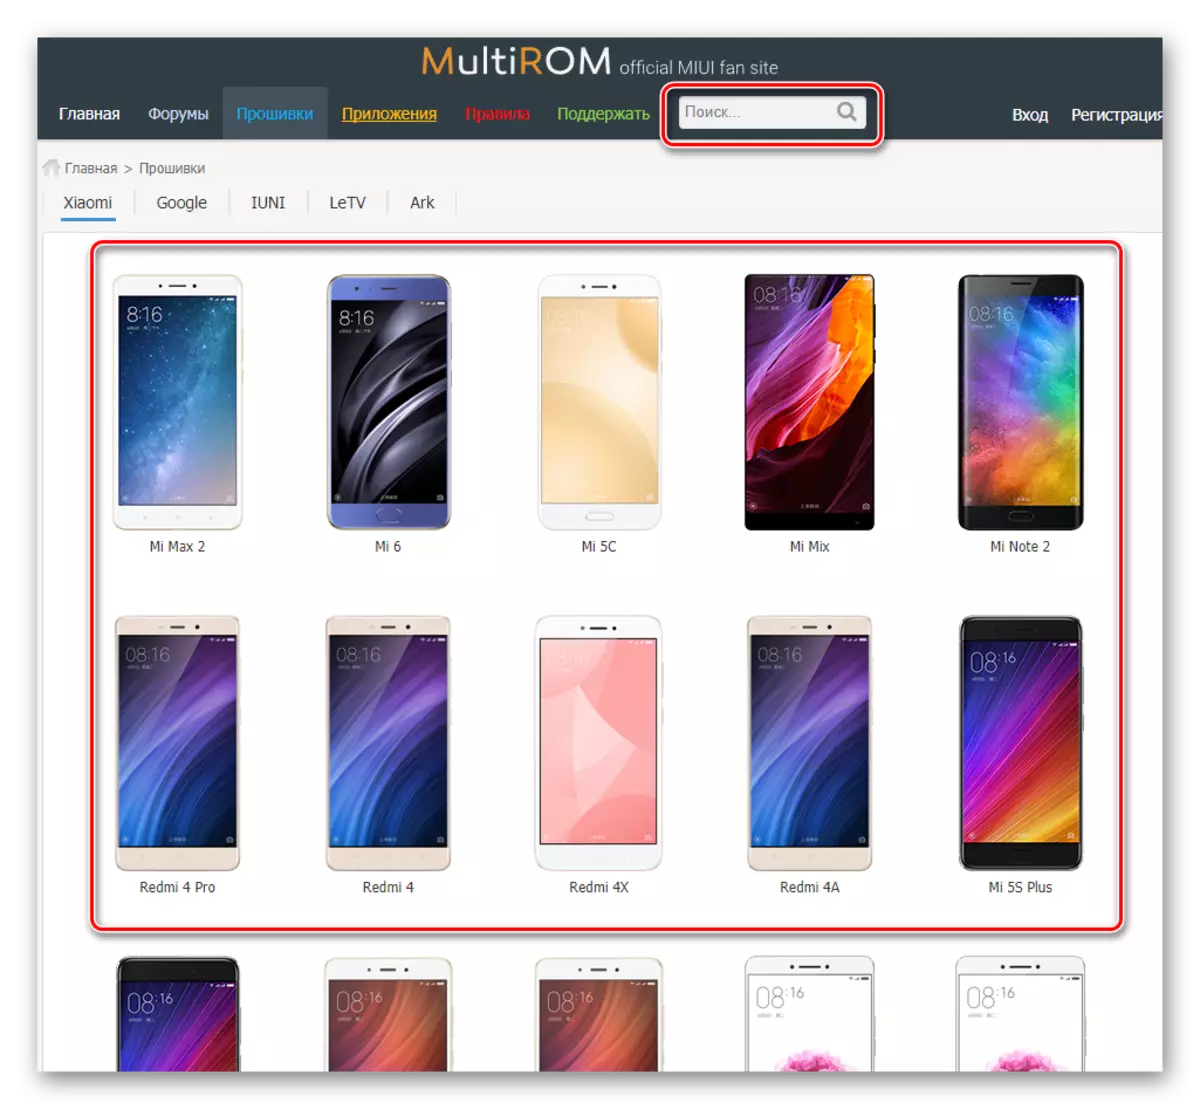 Multirom mencari model ponsel cerdas untuk mengunduh firmware